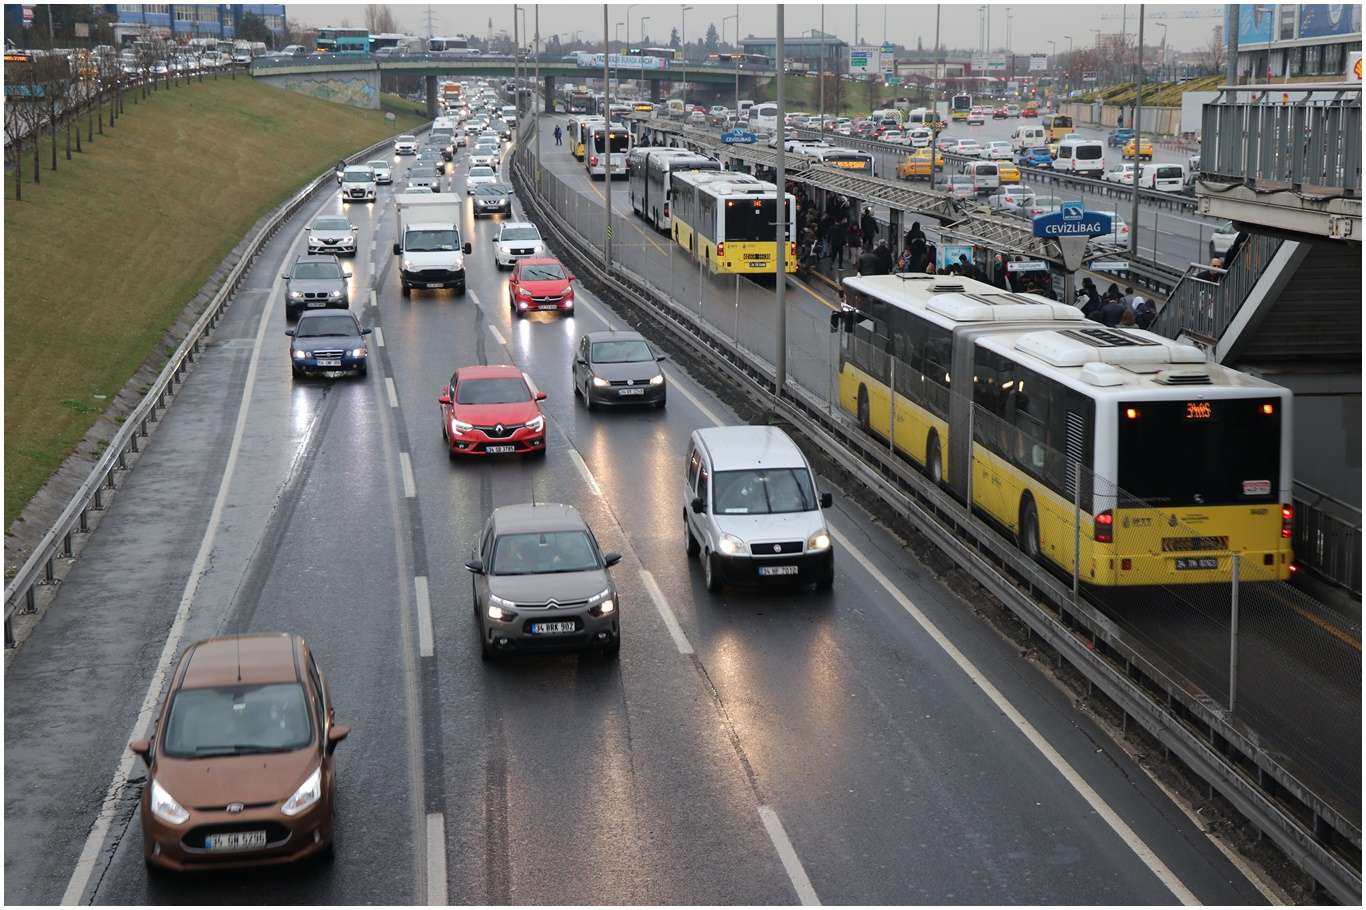 İstanbul'da yarın bazı yollar trafiğe kapalı olacak